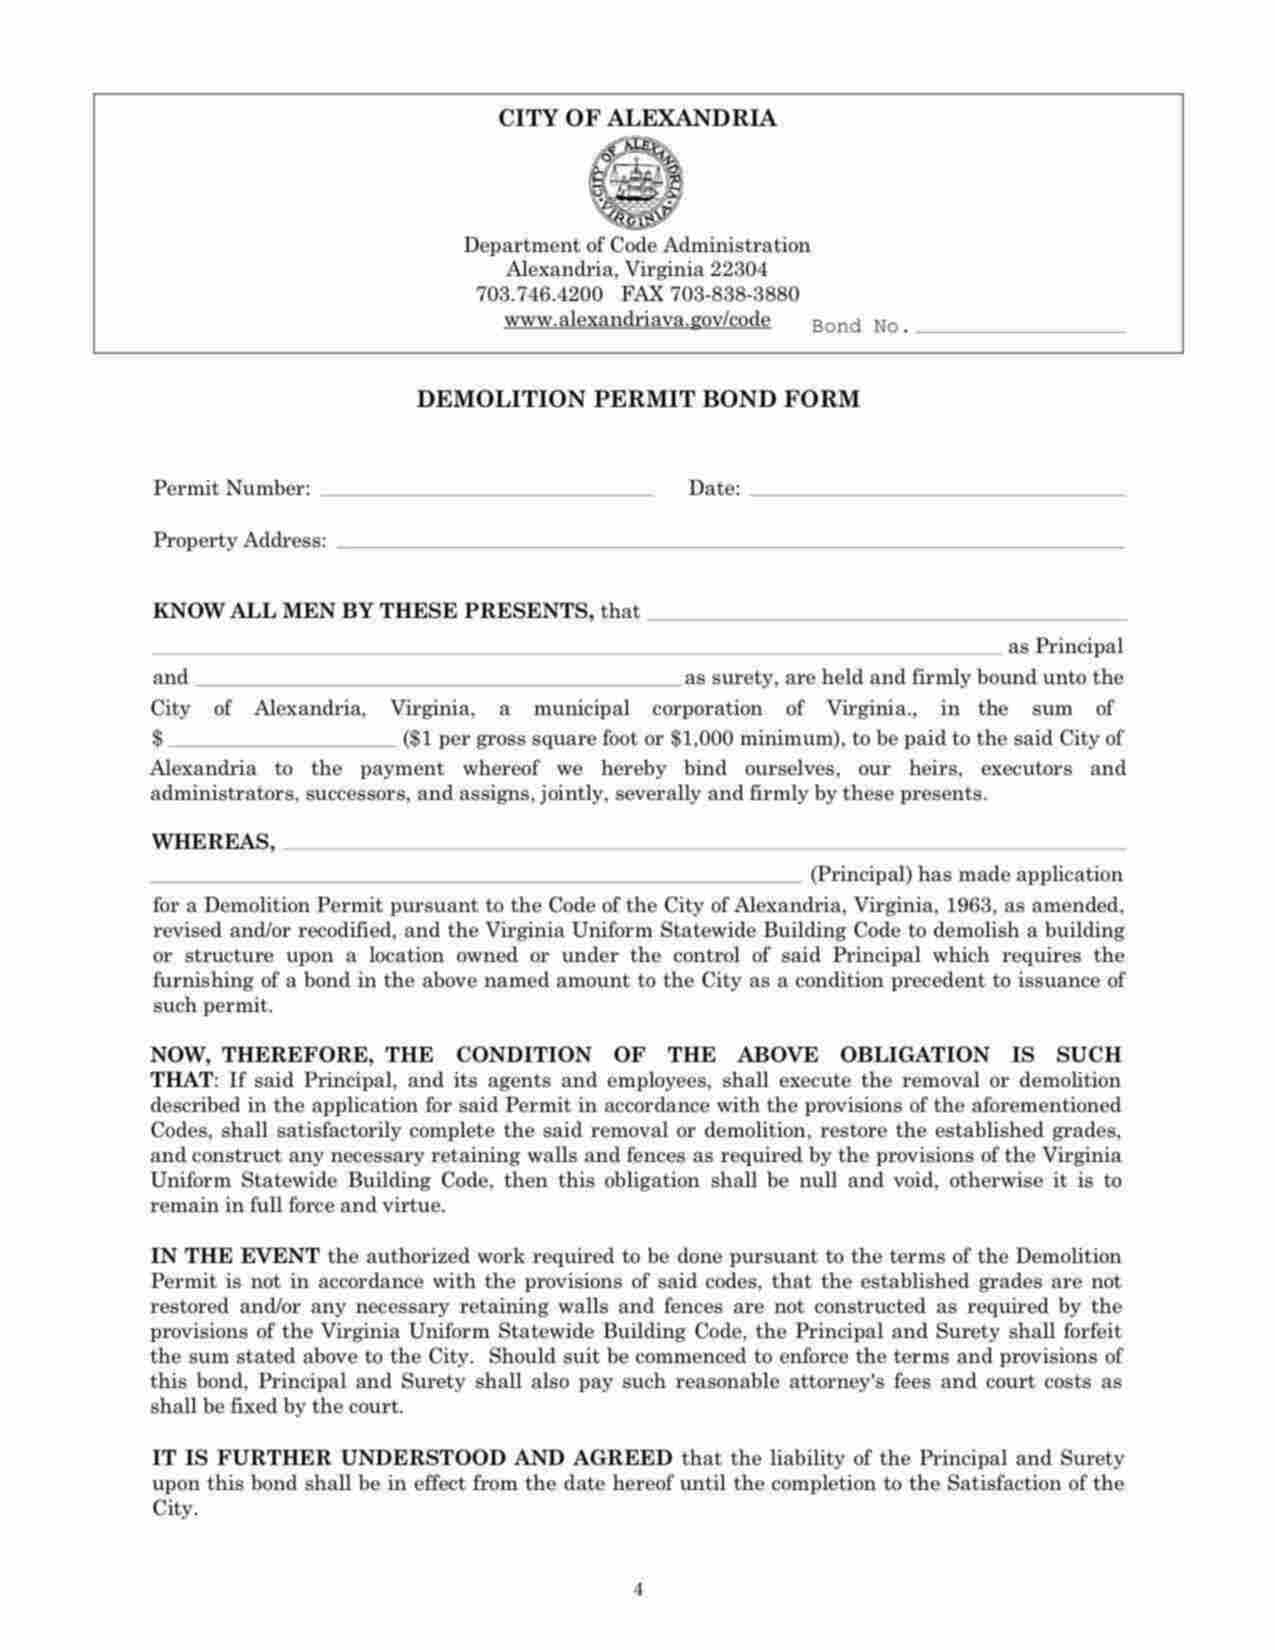 Virginia Demolition Permit Bond Form